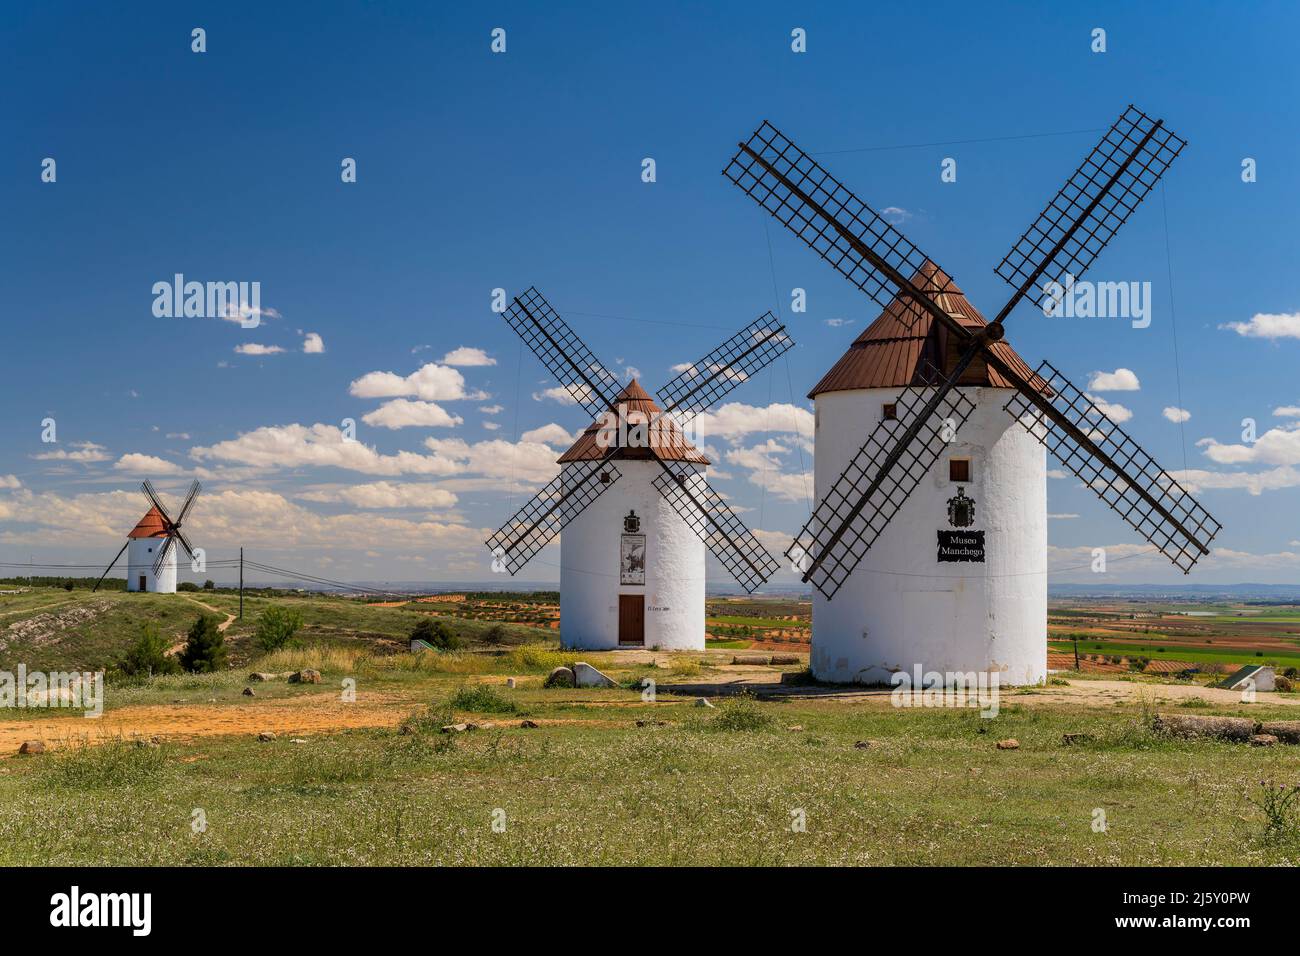 Moulins à vent typiques, Mota del Cuervo, Castilla-la Mancha, Espagne Banque D'Images